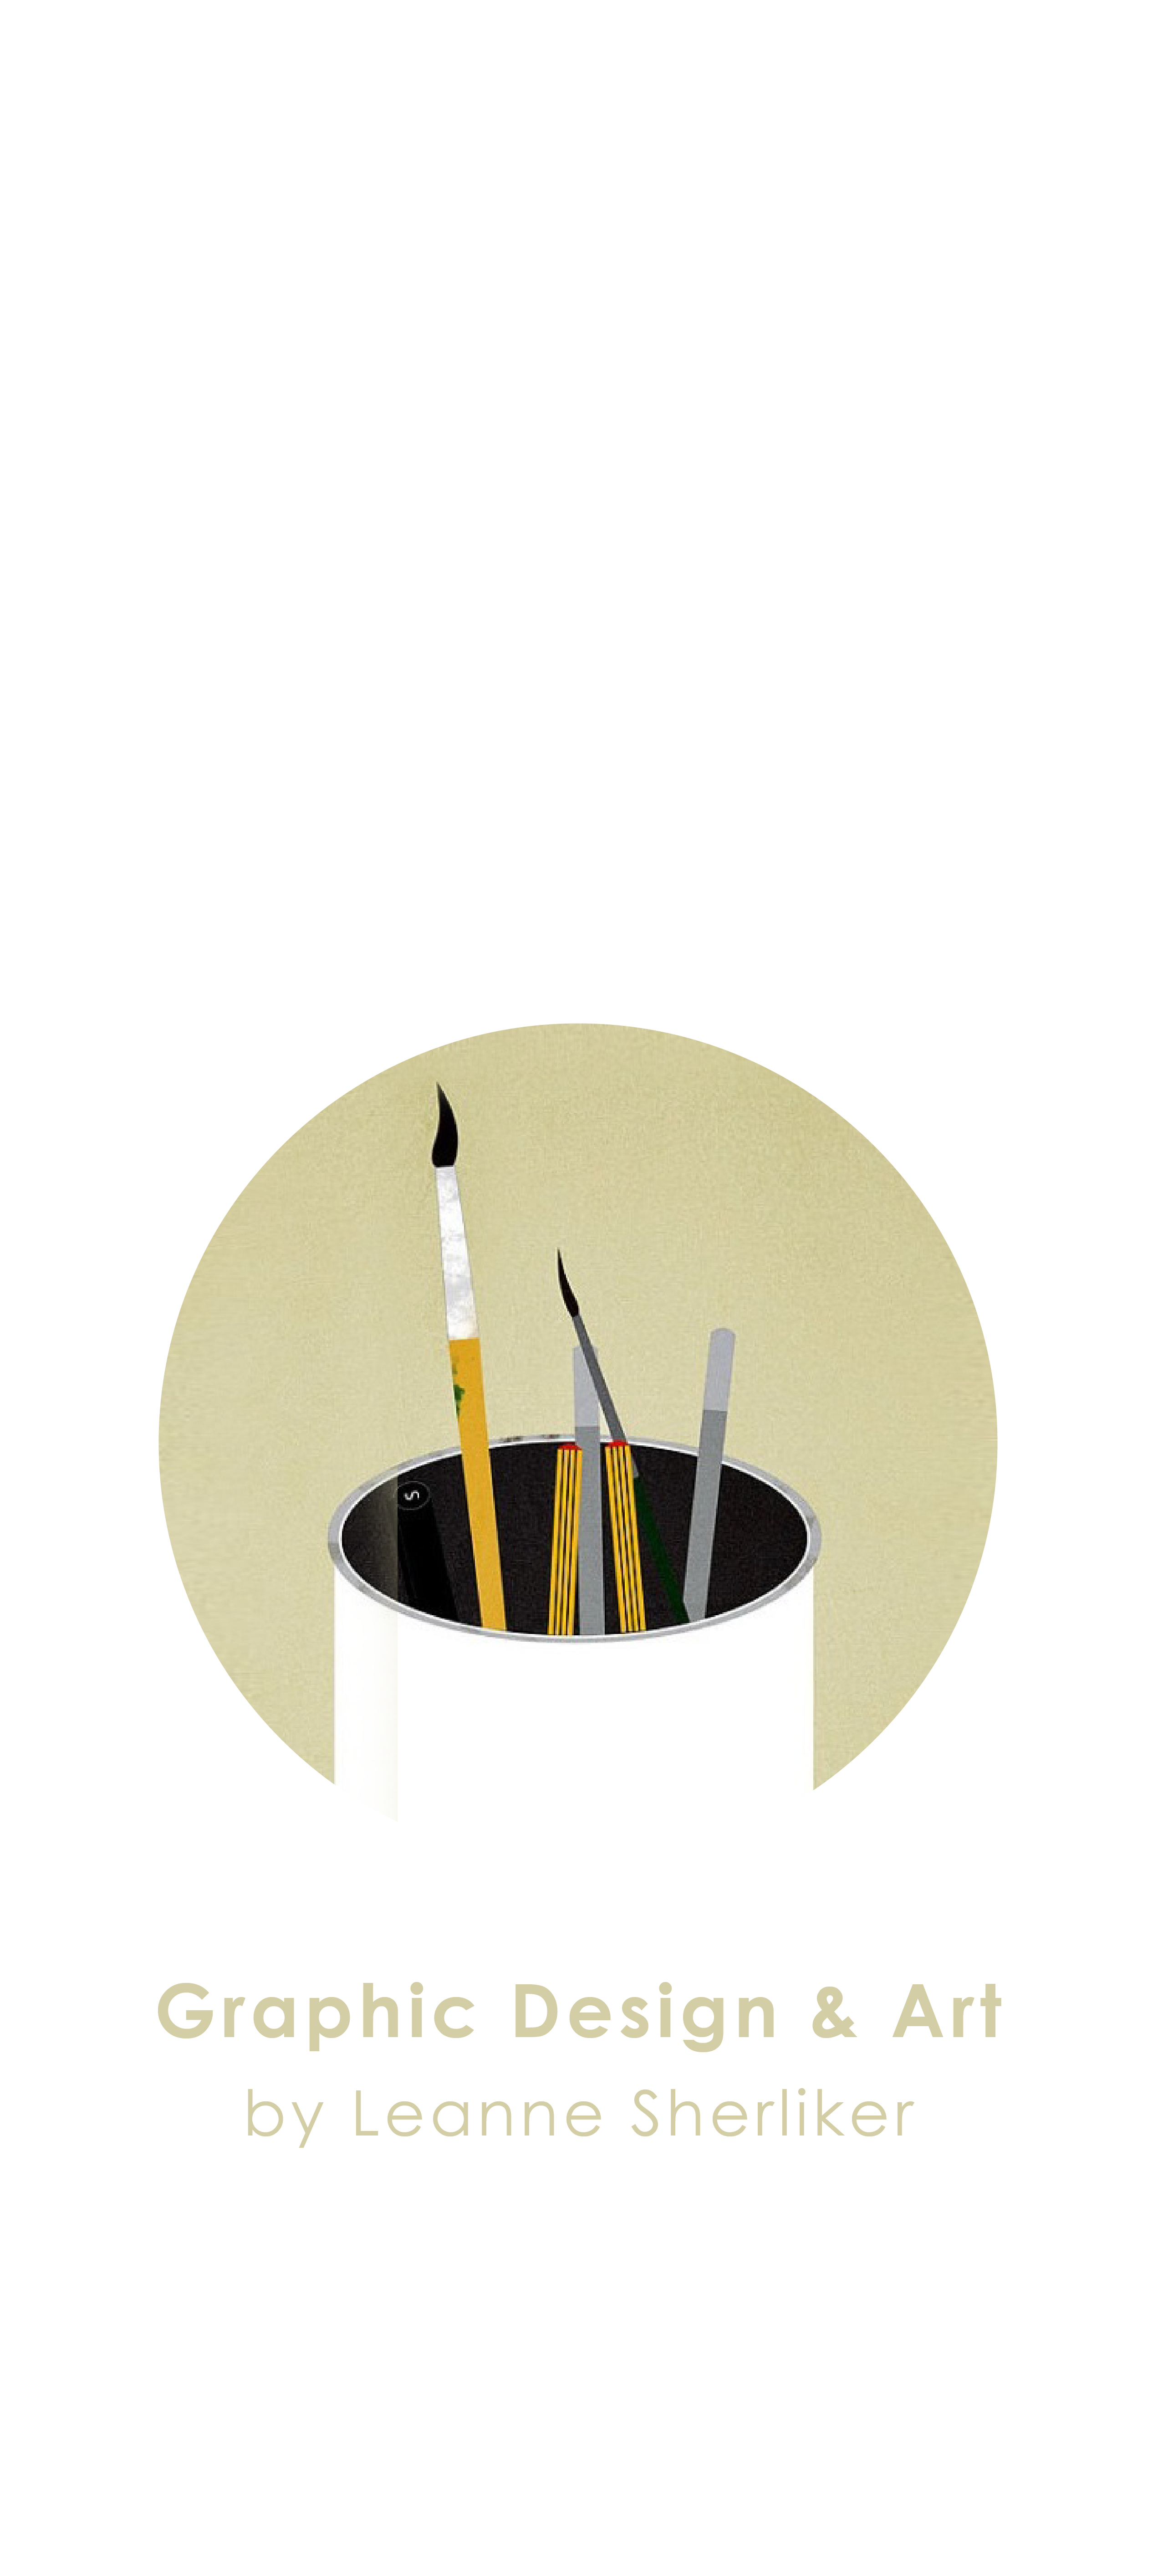 LS designworks